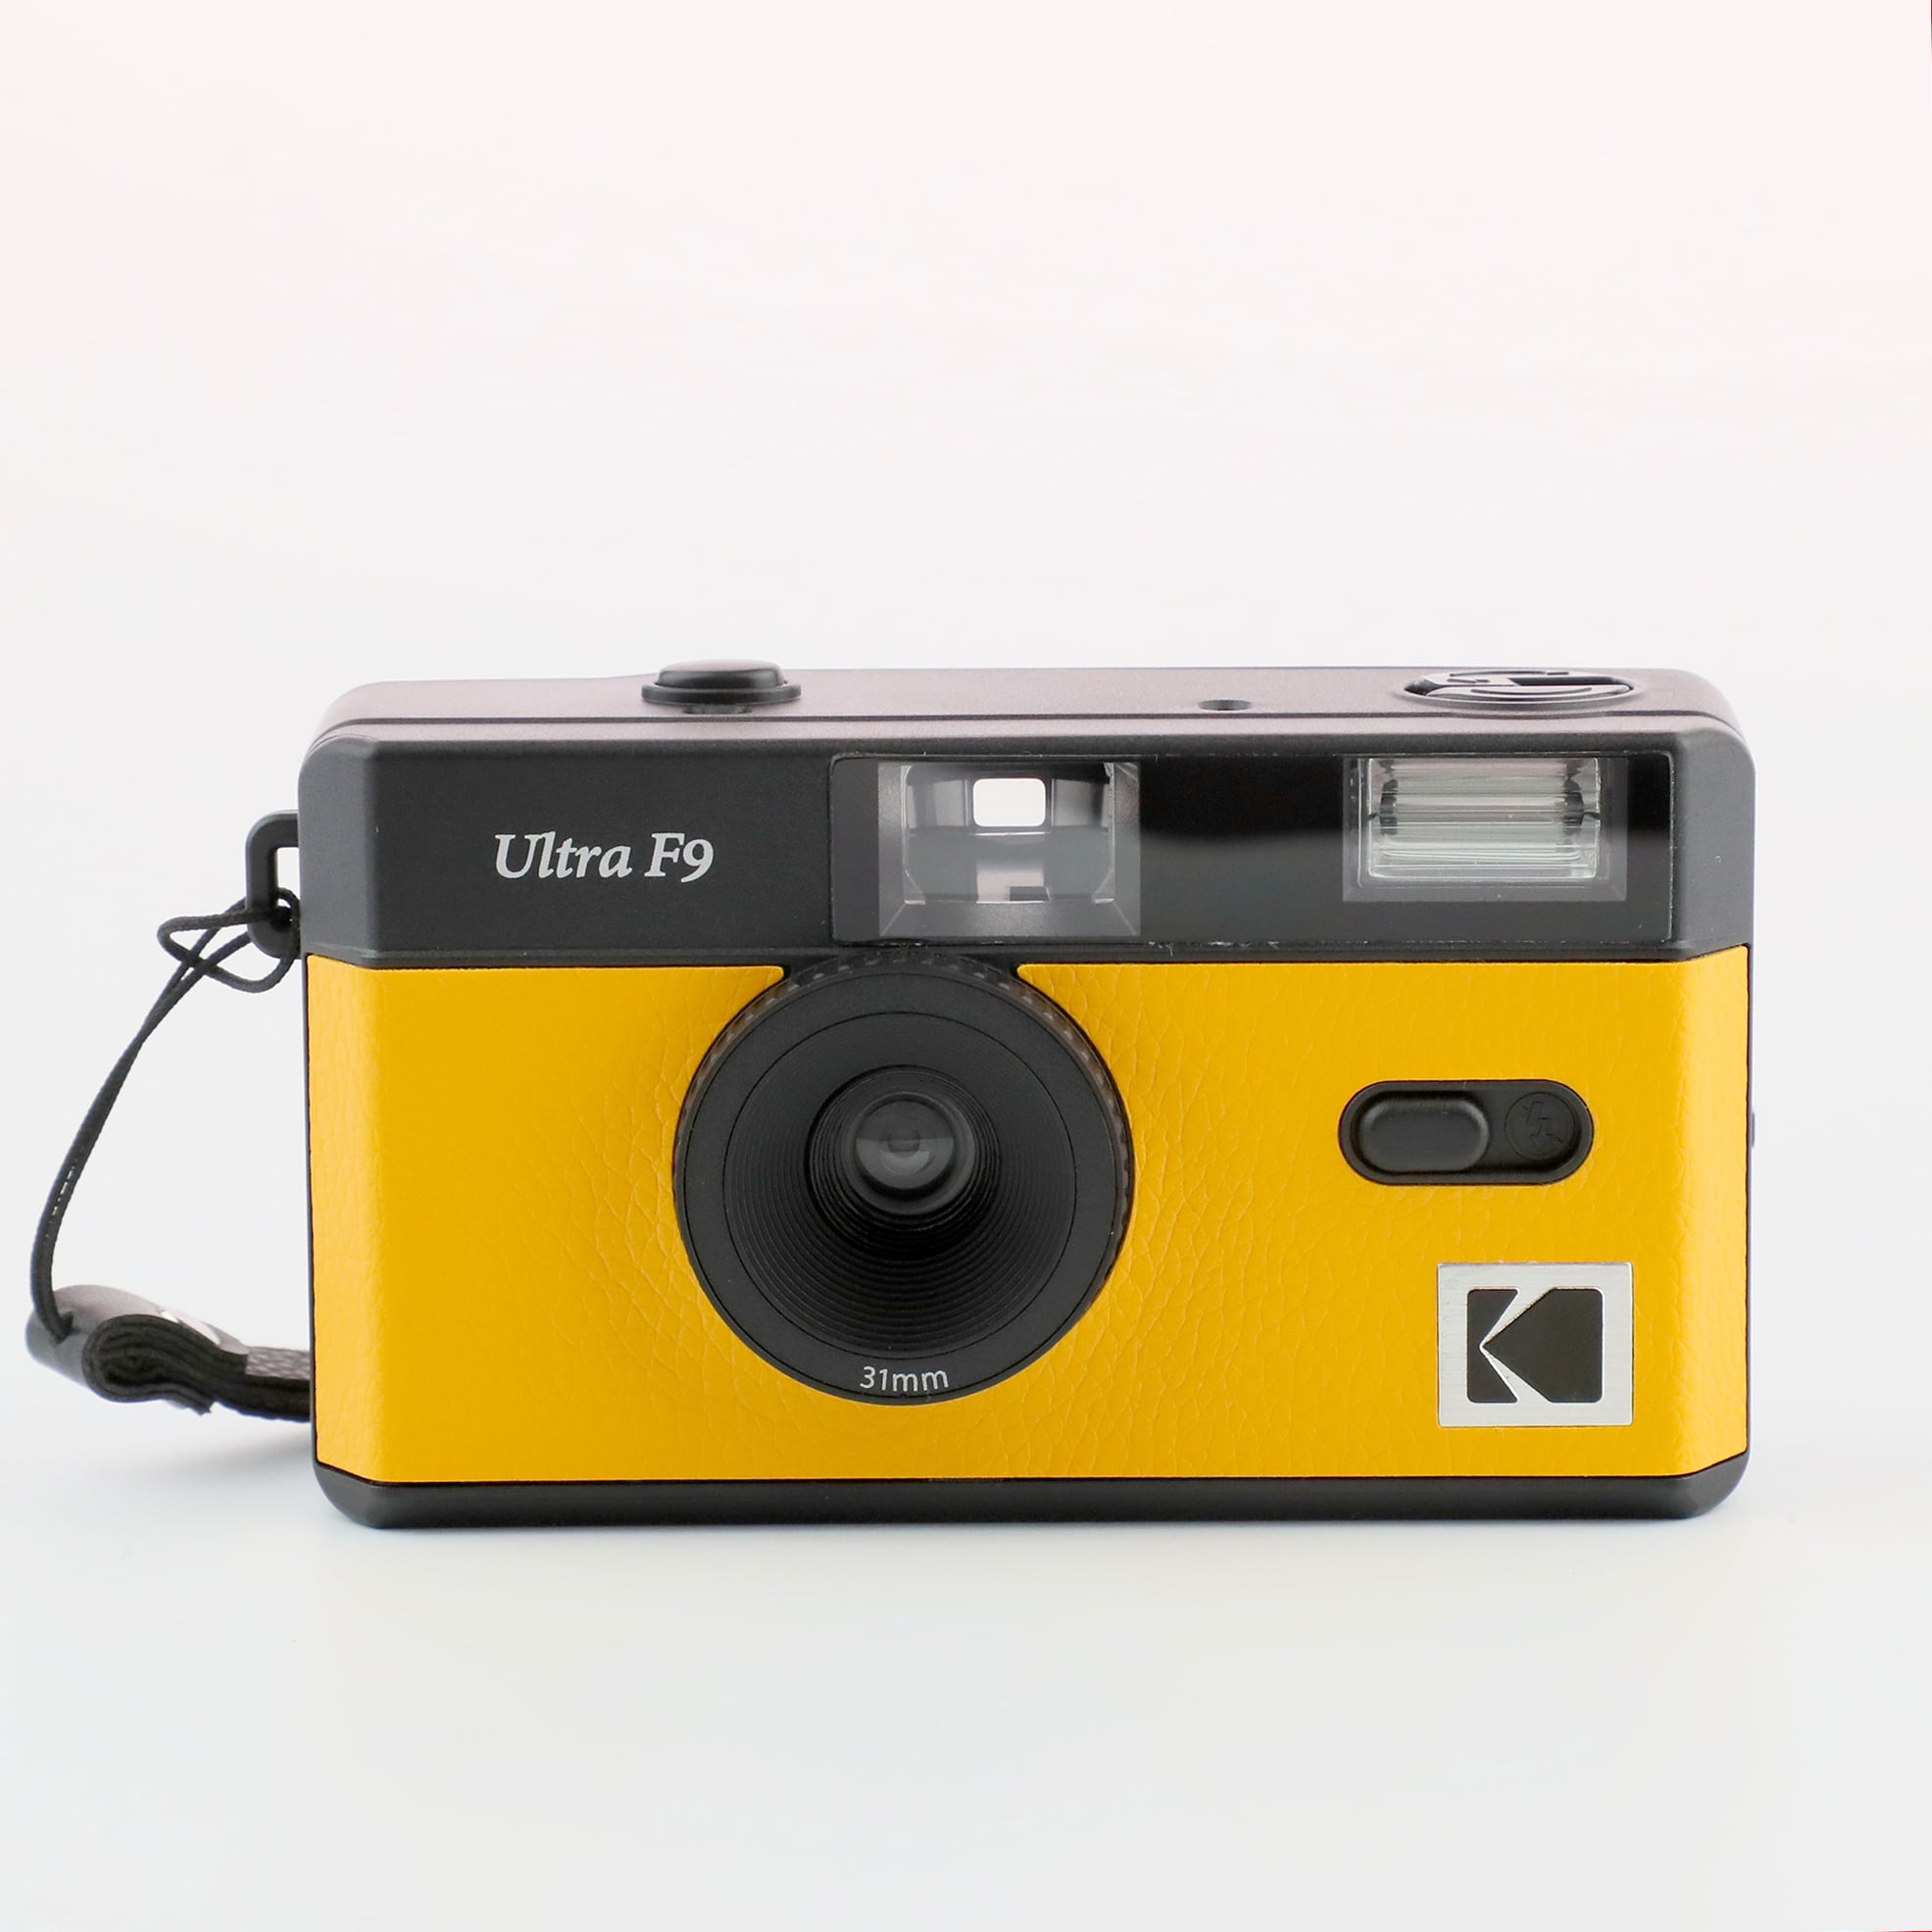 フラッシュ内蔵・室内撮影OK 2色イエロー/グリーン Kodak Ultra F9